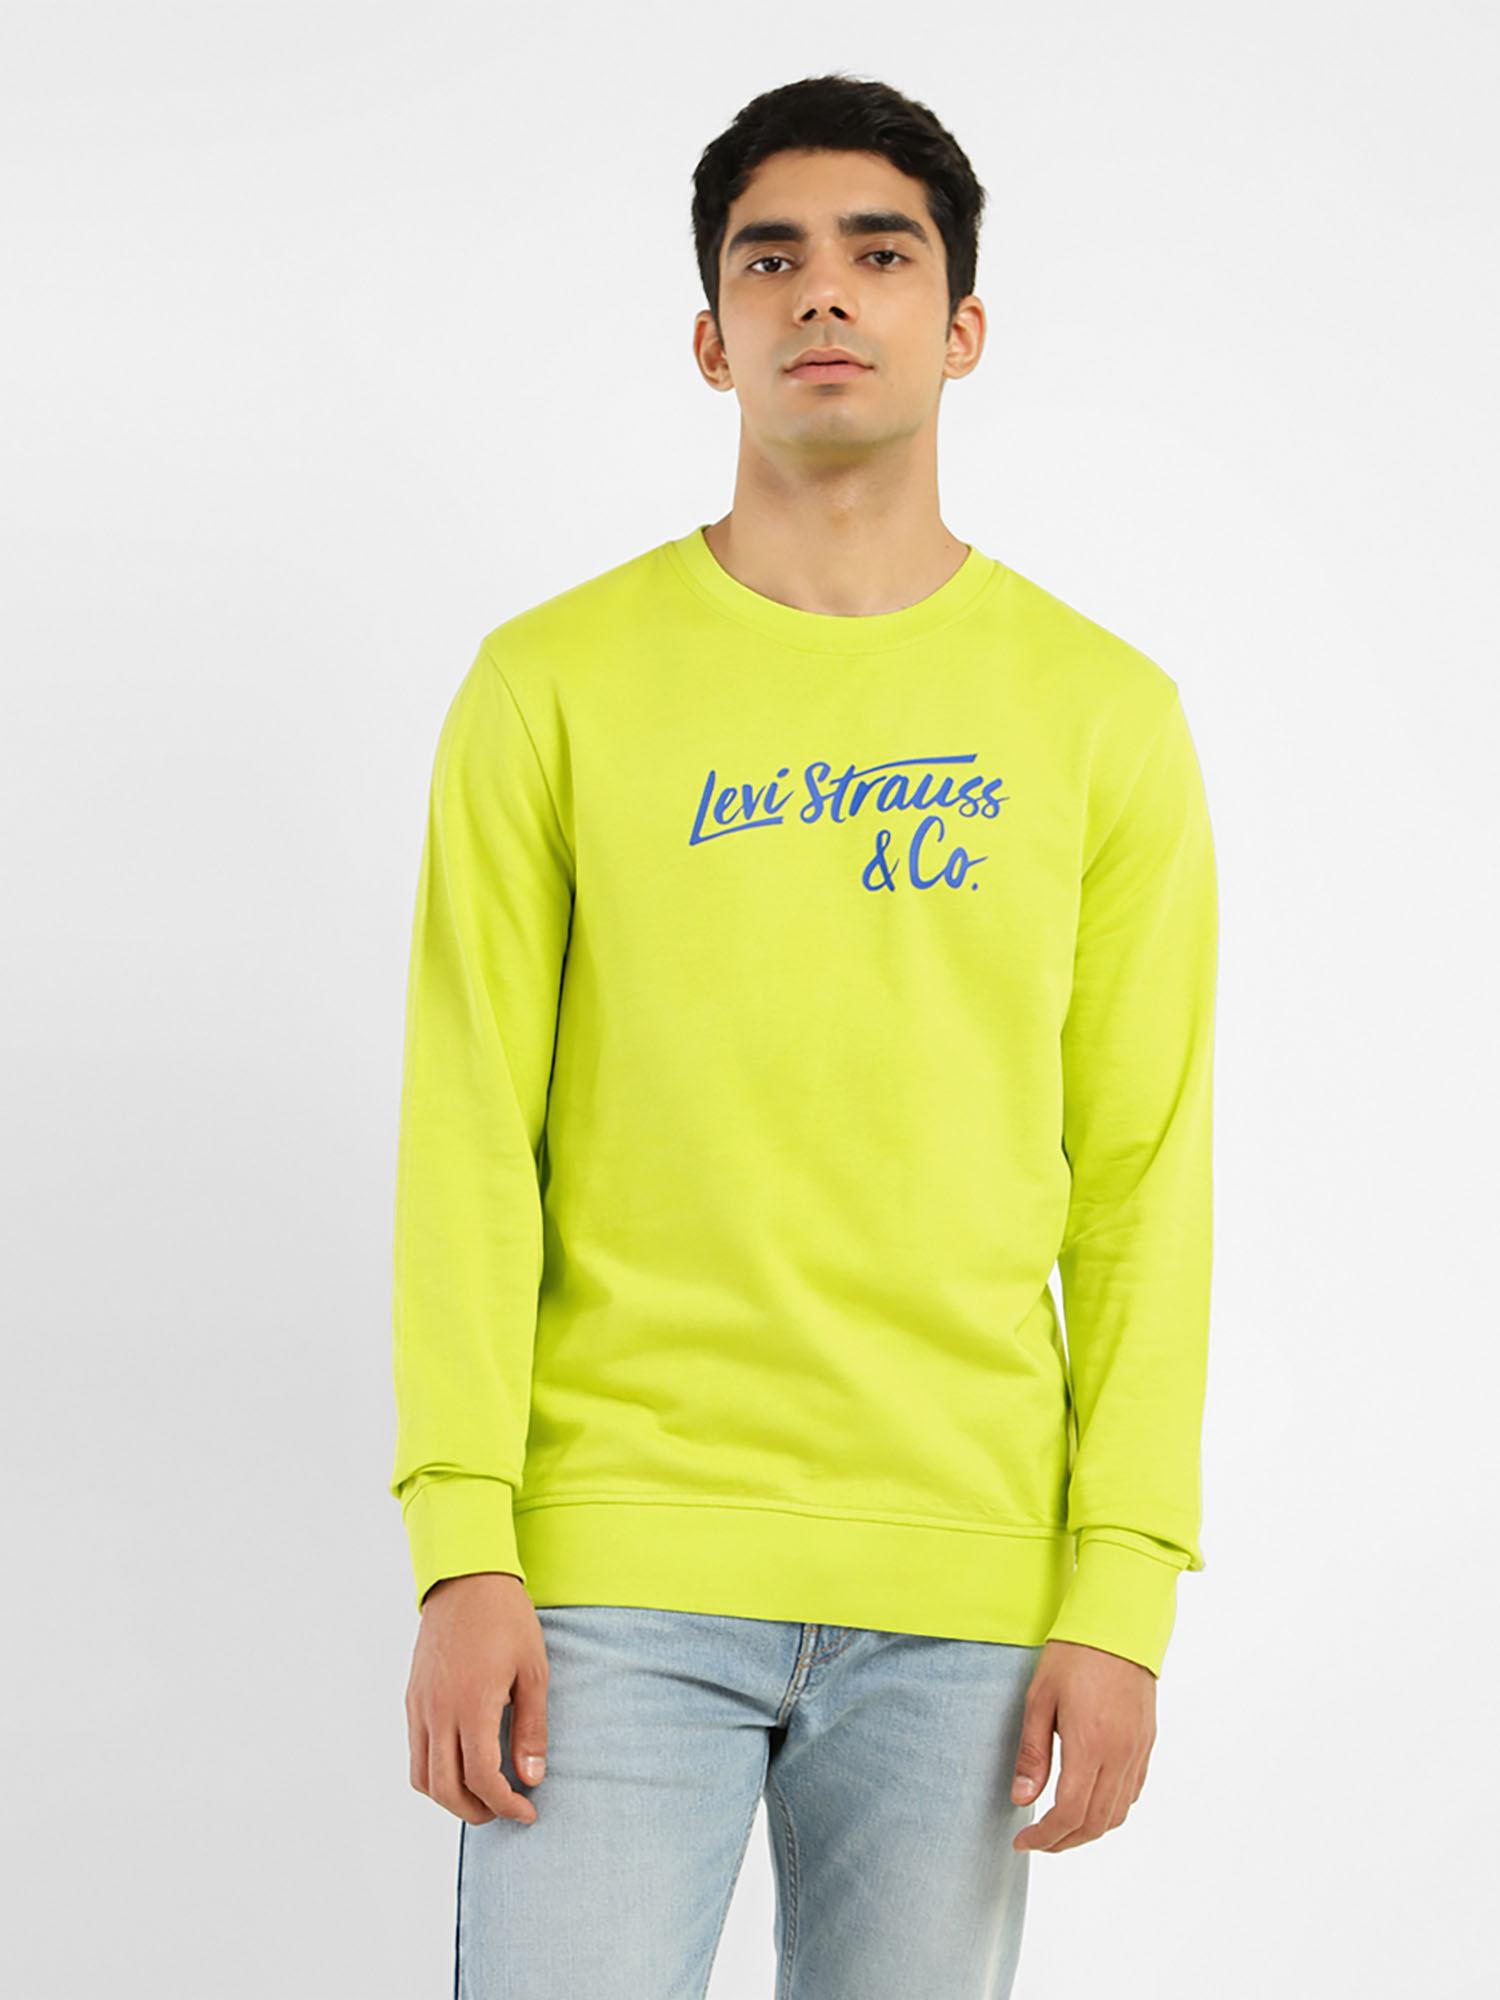 men's-graphic-print-green-crew-neck-sweatshirt